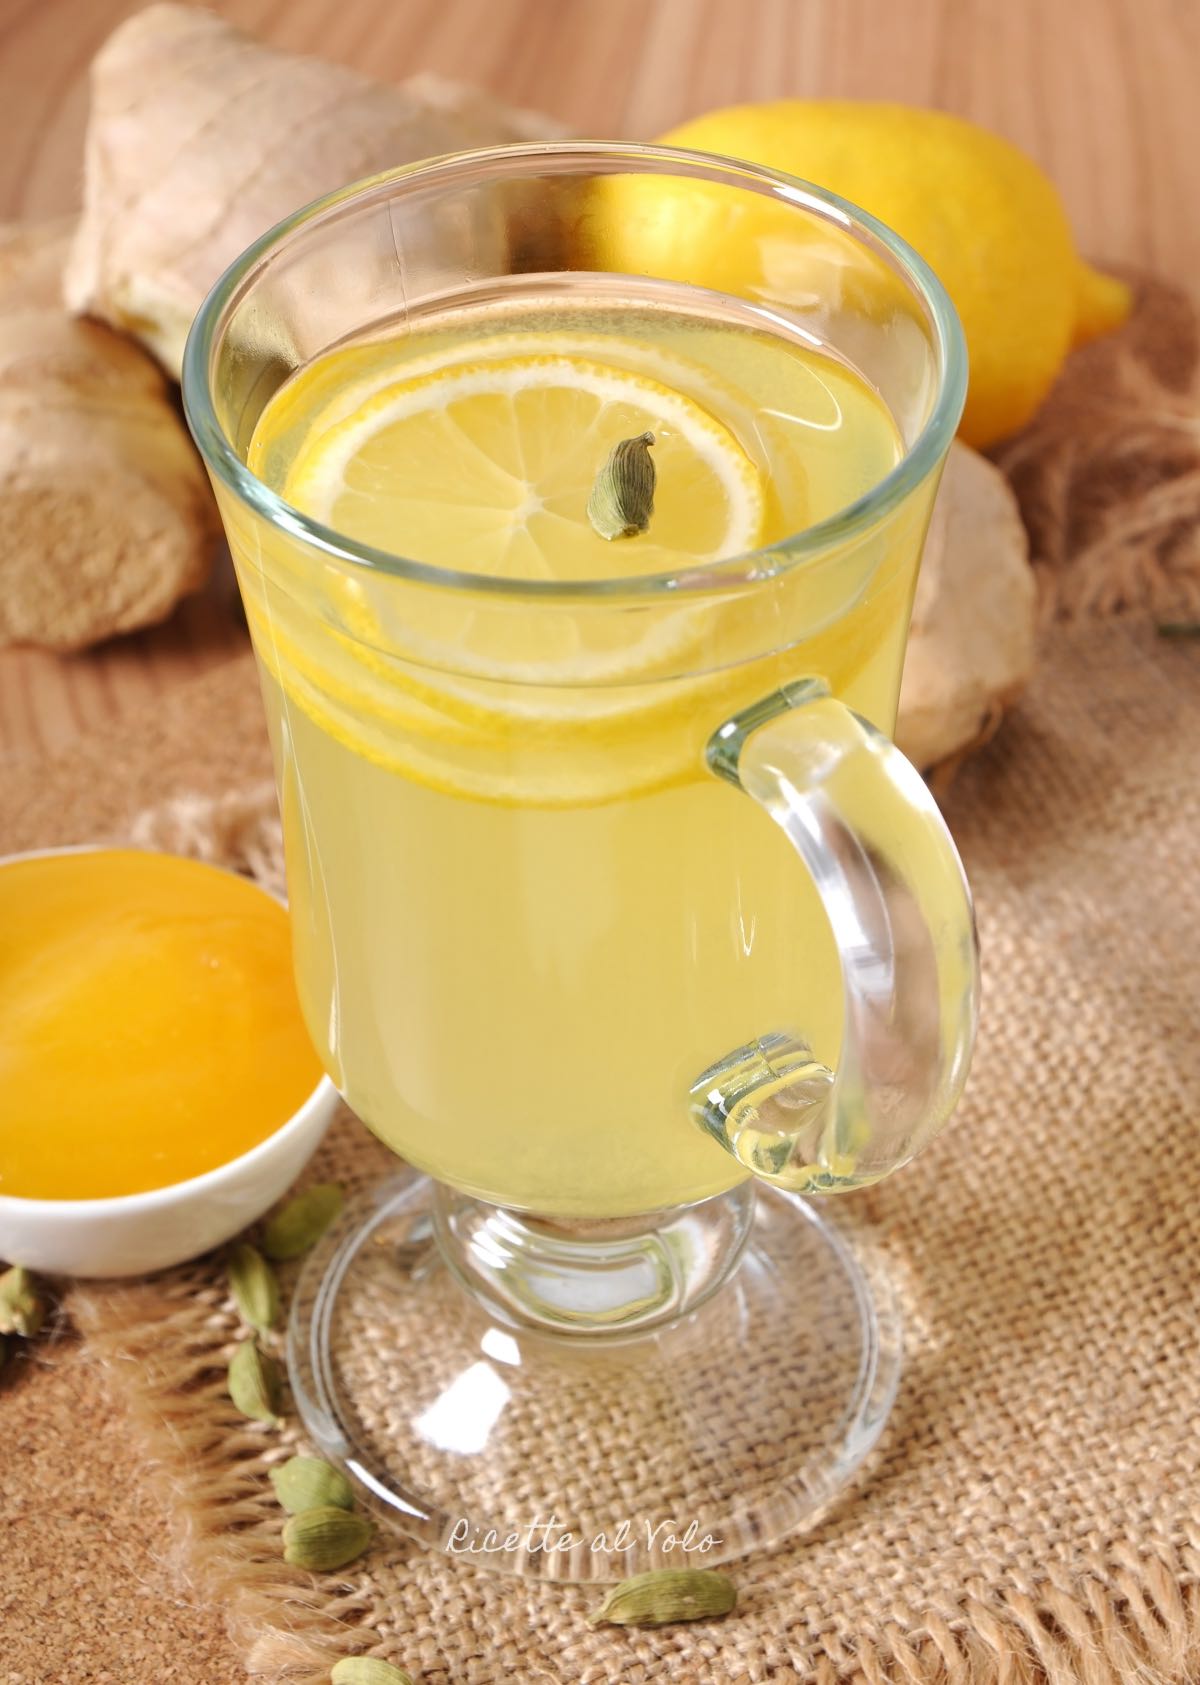 Ginger-lemon-turmeric herbal tea for deflating belly